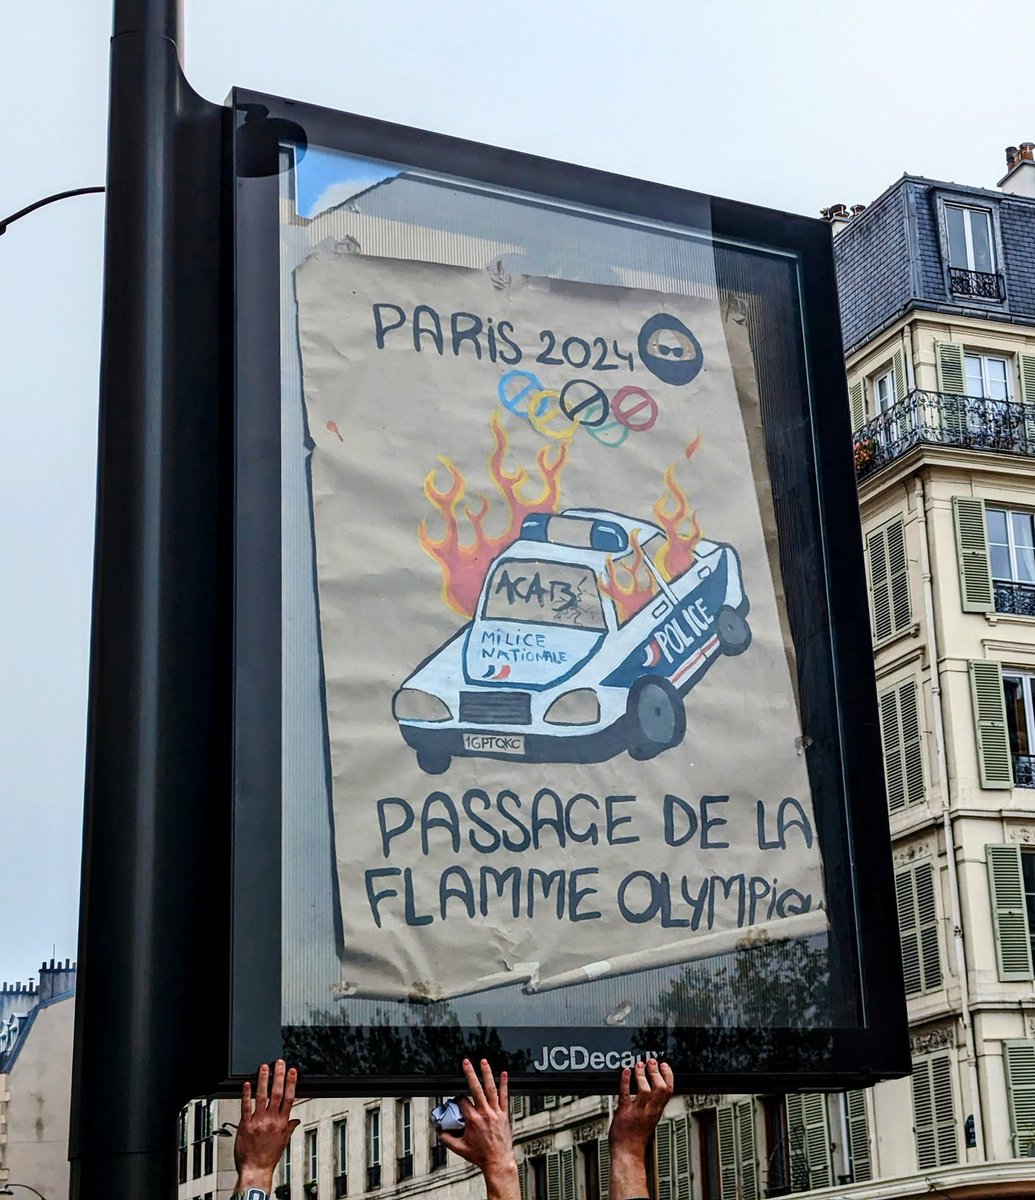 🔴 #Paris : photo d'une affiche 'parodique' des #JOParis2024.

Le 8 octobre 2016, quatre policiers ont été agressés par plusieurs personnes à #ViryChâtillon en Essonne. Ils ont failli être brûlés vifs dans leur voiture en feu après des tirs de cocktails molotov. #1erMai